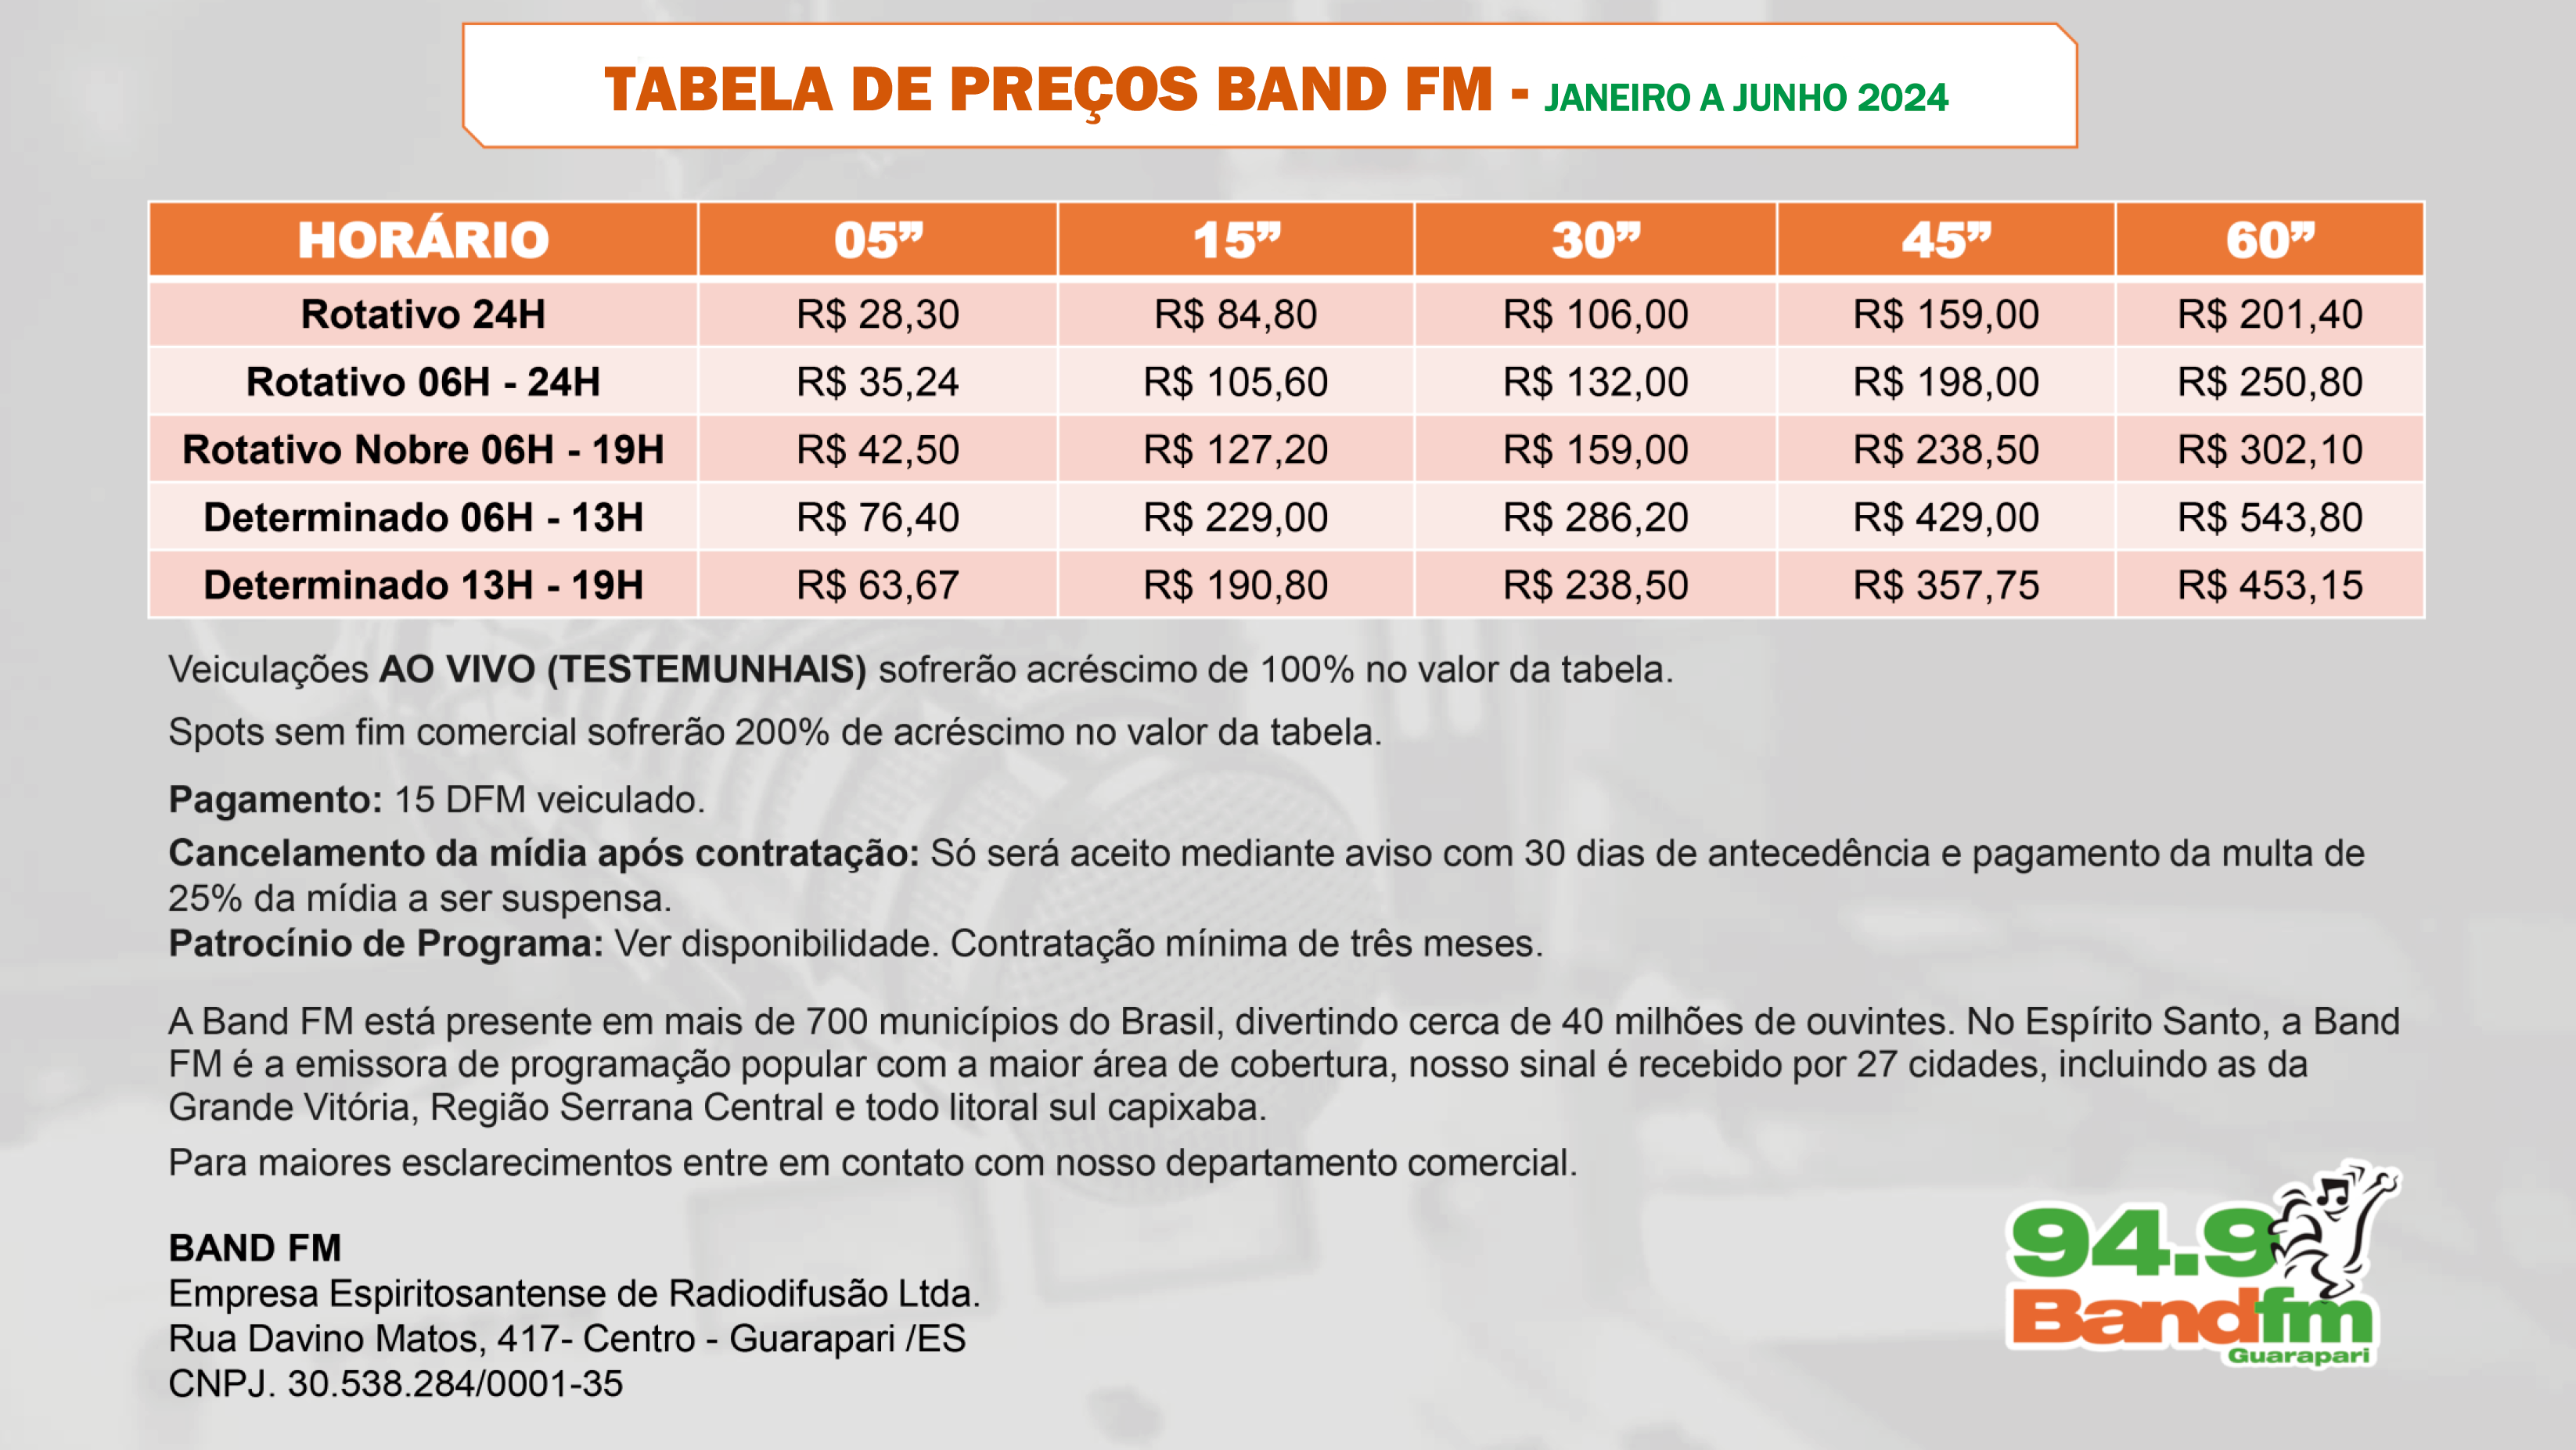 TABELA DE PREÇOS BAND FM - JANEIRO A JUNHO DE 2024